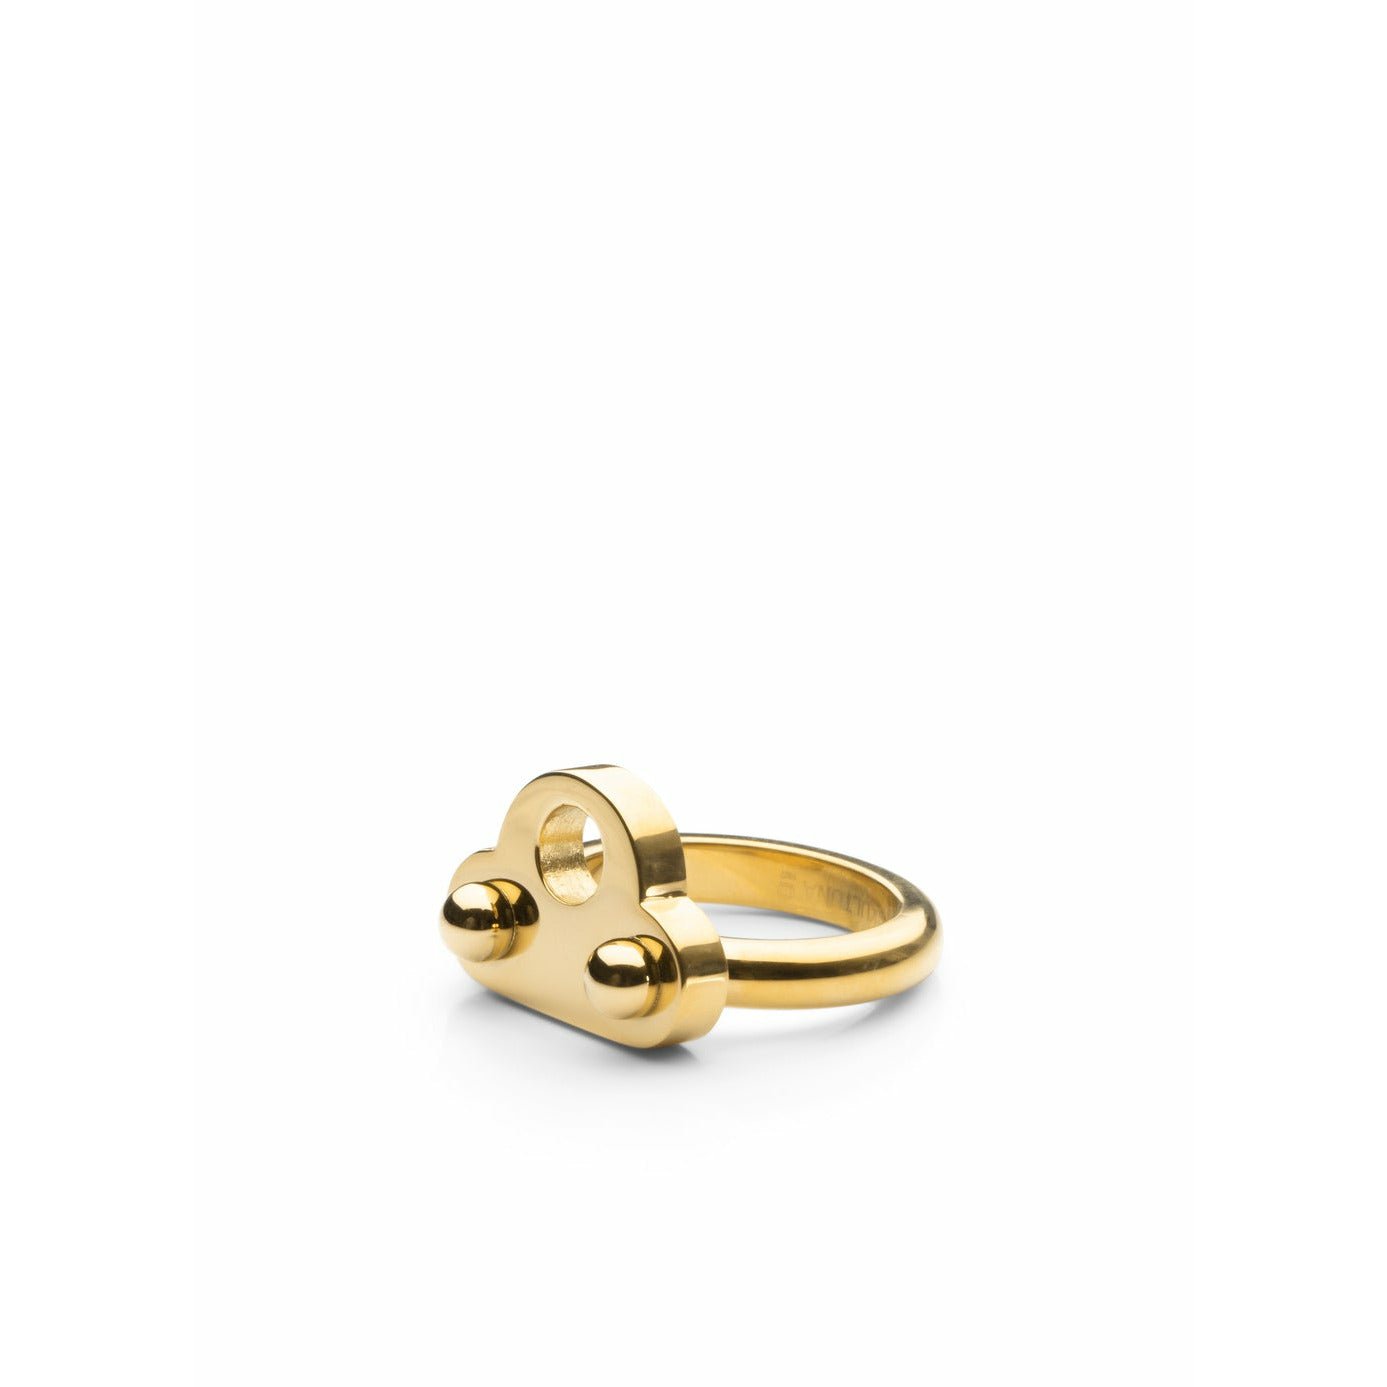 Skultuna nyckel Signet Ring Medium Gold Plated, Ø1,81 cm